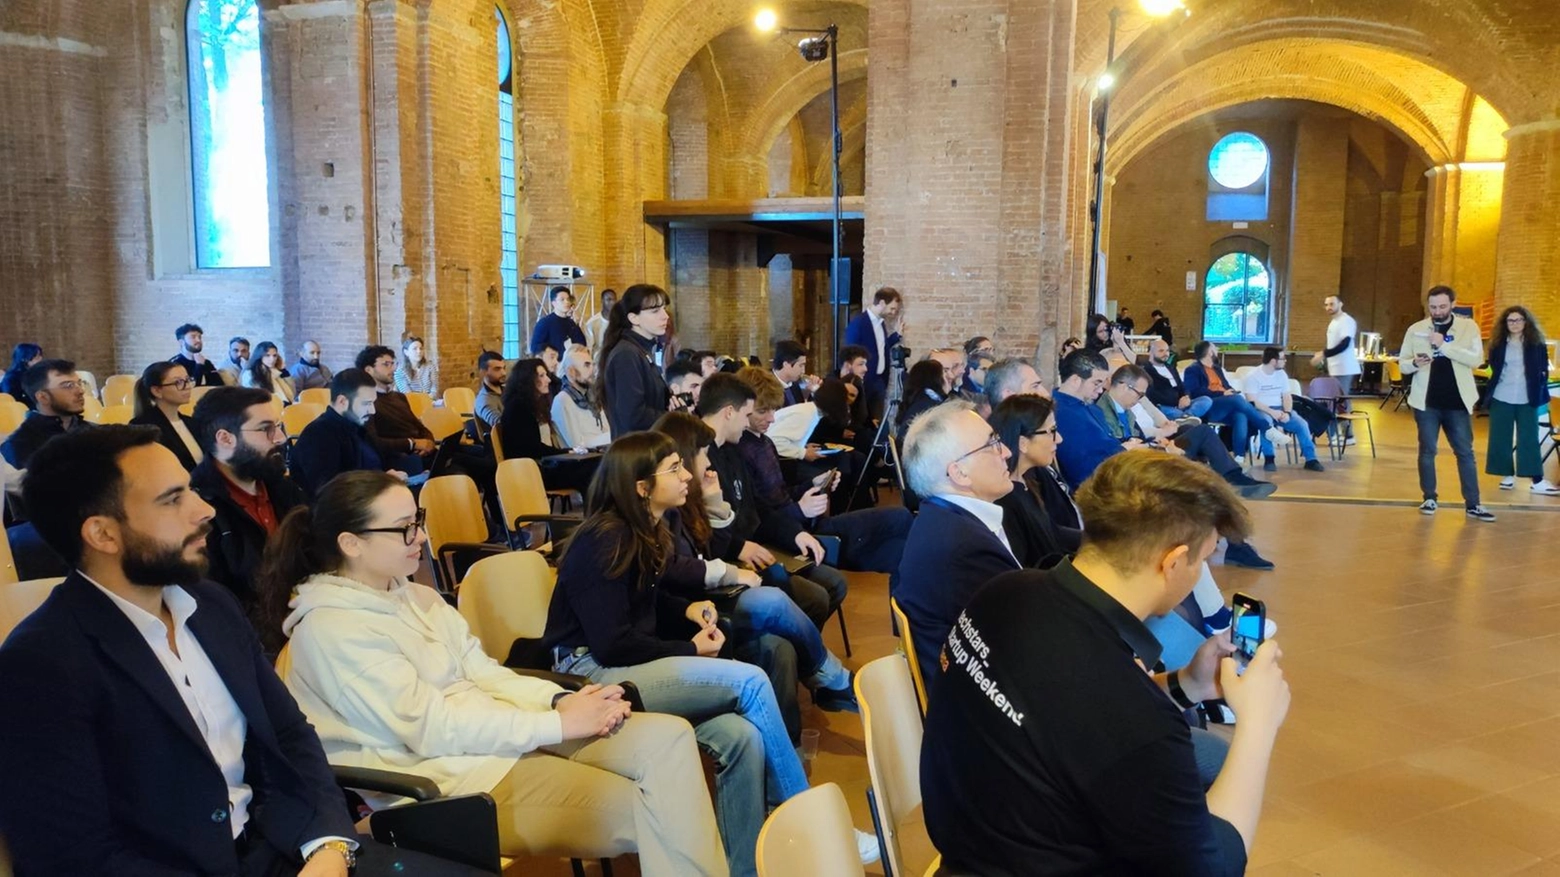 Successo per la prima edizione della Startup Weekend Siena, con idee innovative trasformate in progetti concreti. I giovani partecipanti supportati da mentor esperti. Premi e opportunità per le startup vincitrici.